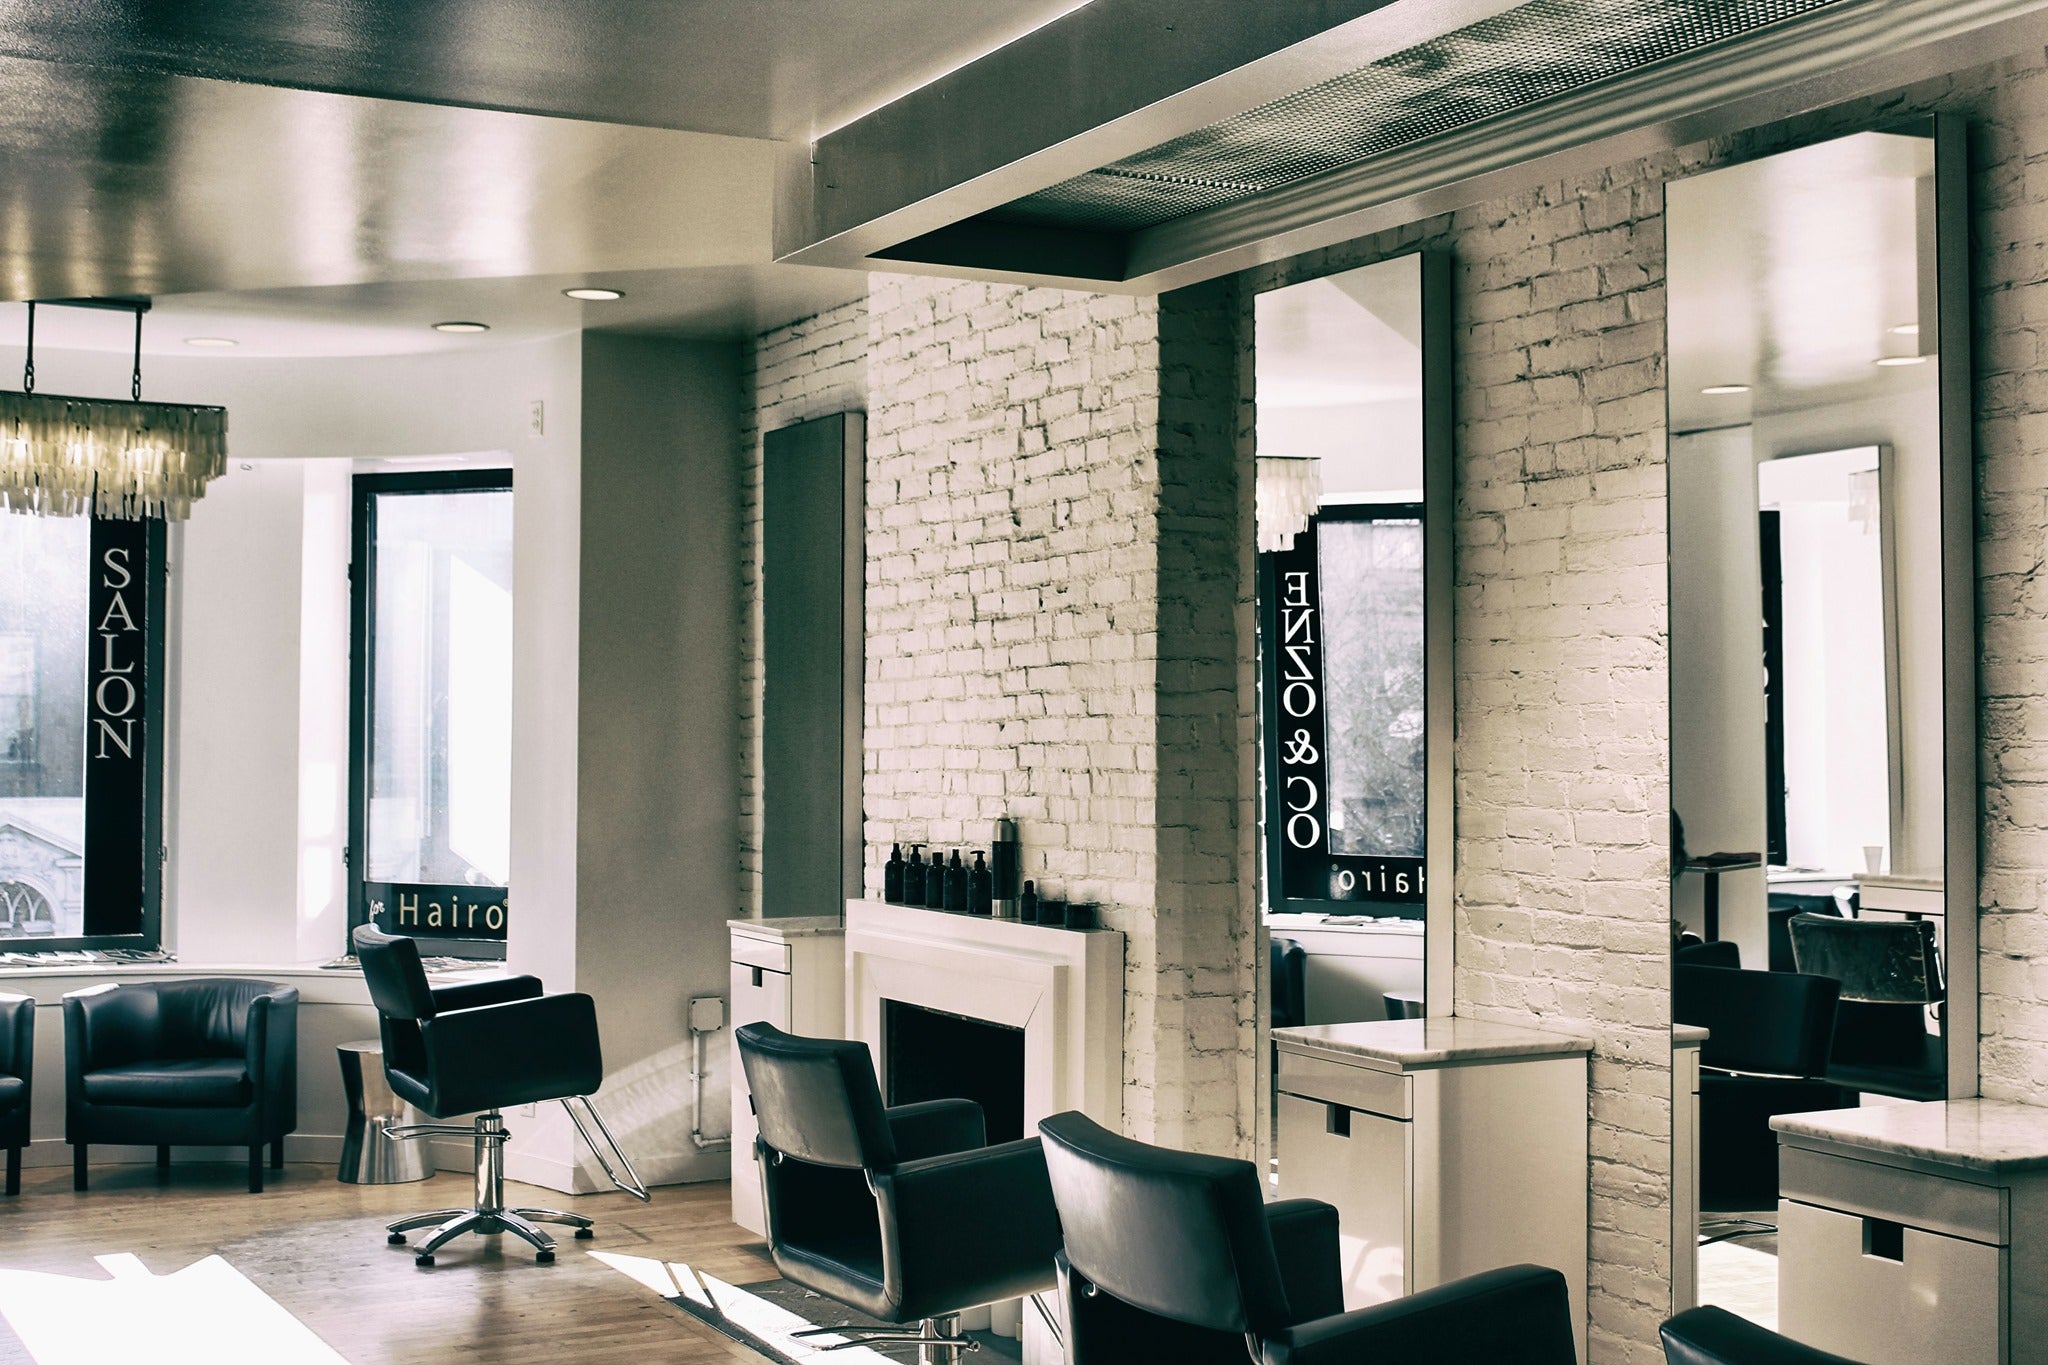 Enzo & Co for Hairo - inside of salon